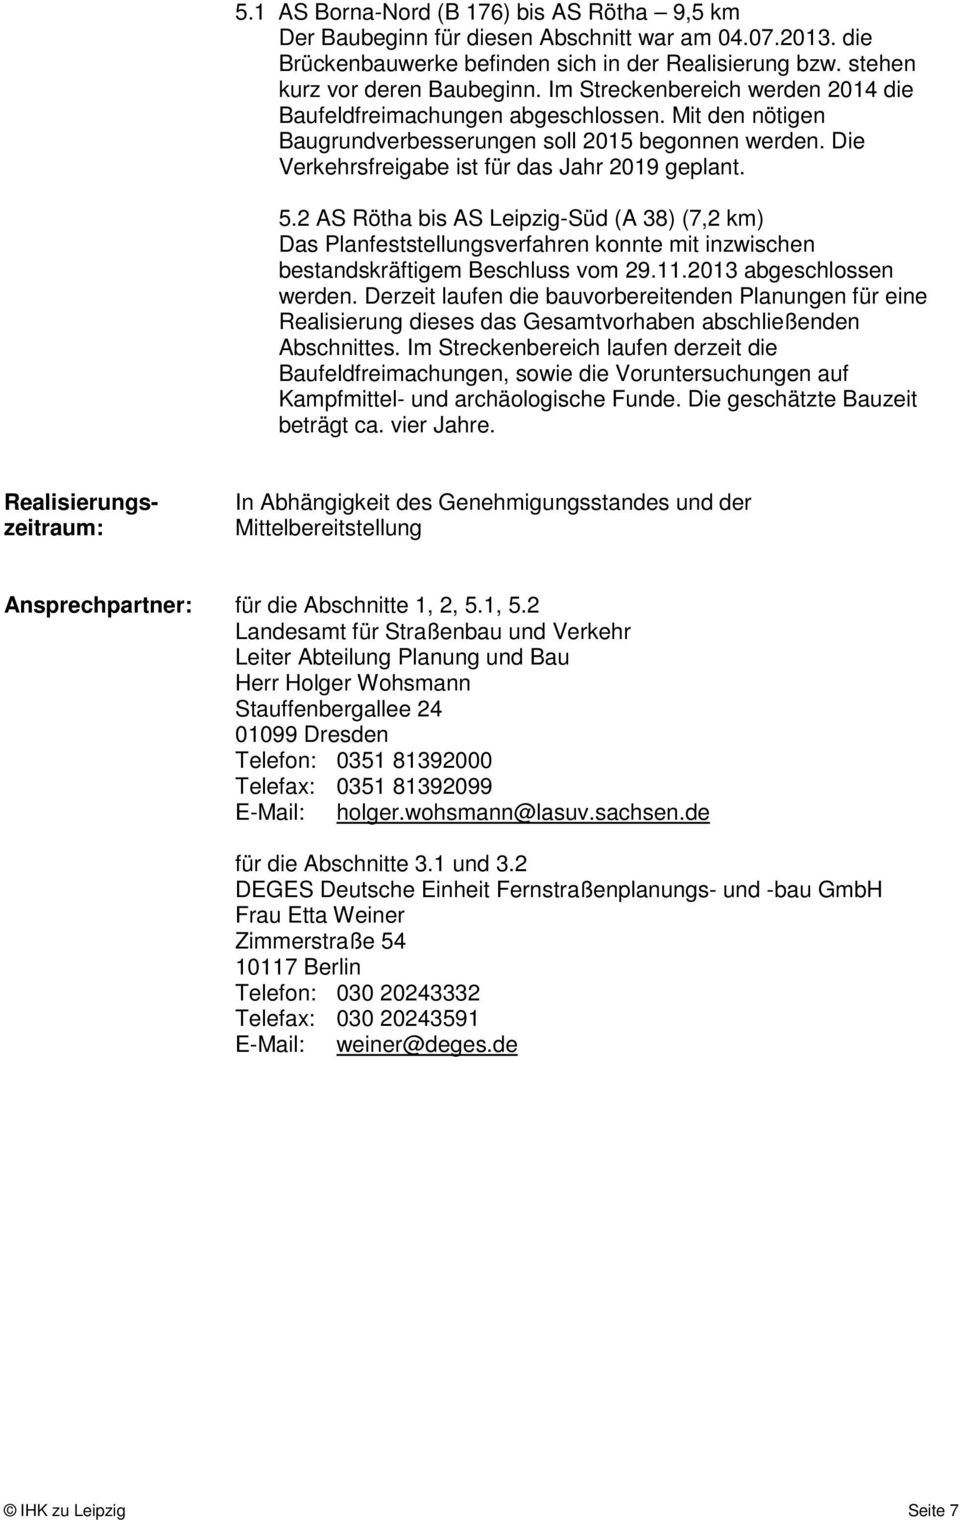 2 AS Rötha bis AS Leipzig-Süd (A 38) (7,2 km) Das Planfeststellungsverfahren konnte mit inzwischen bestandskräftigem Beschluss vom 29.11.2013 abgeschlossen werden.